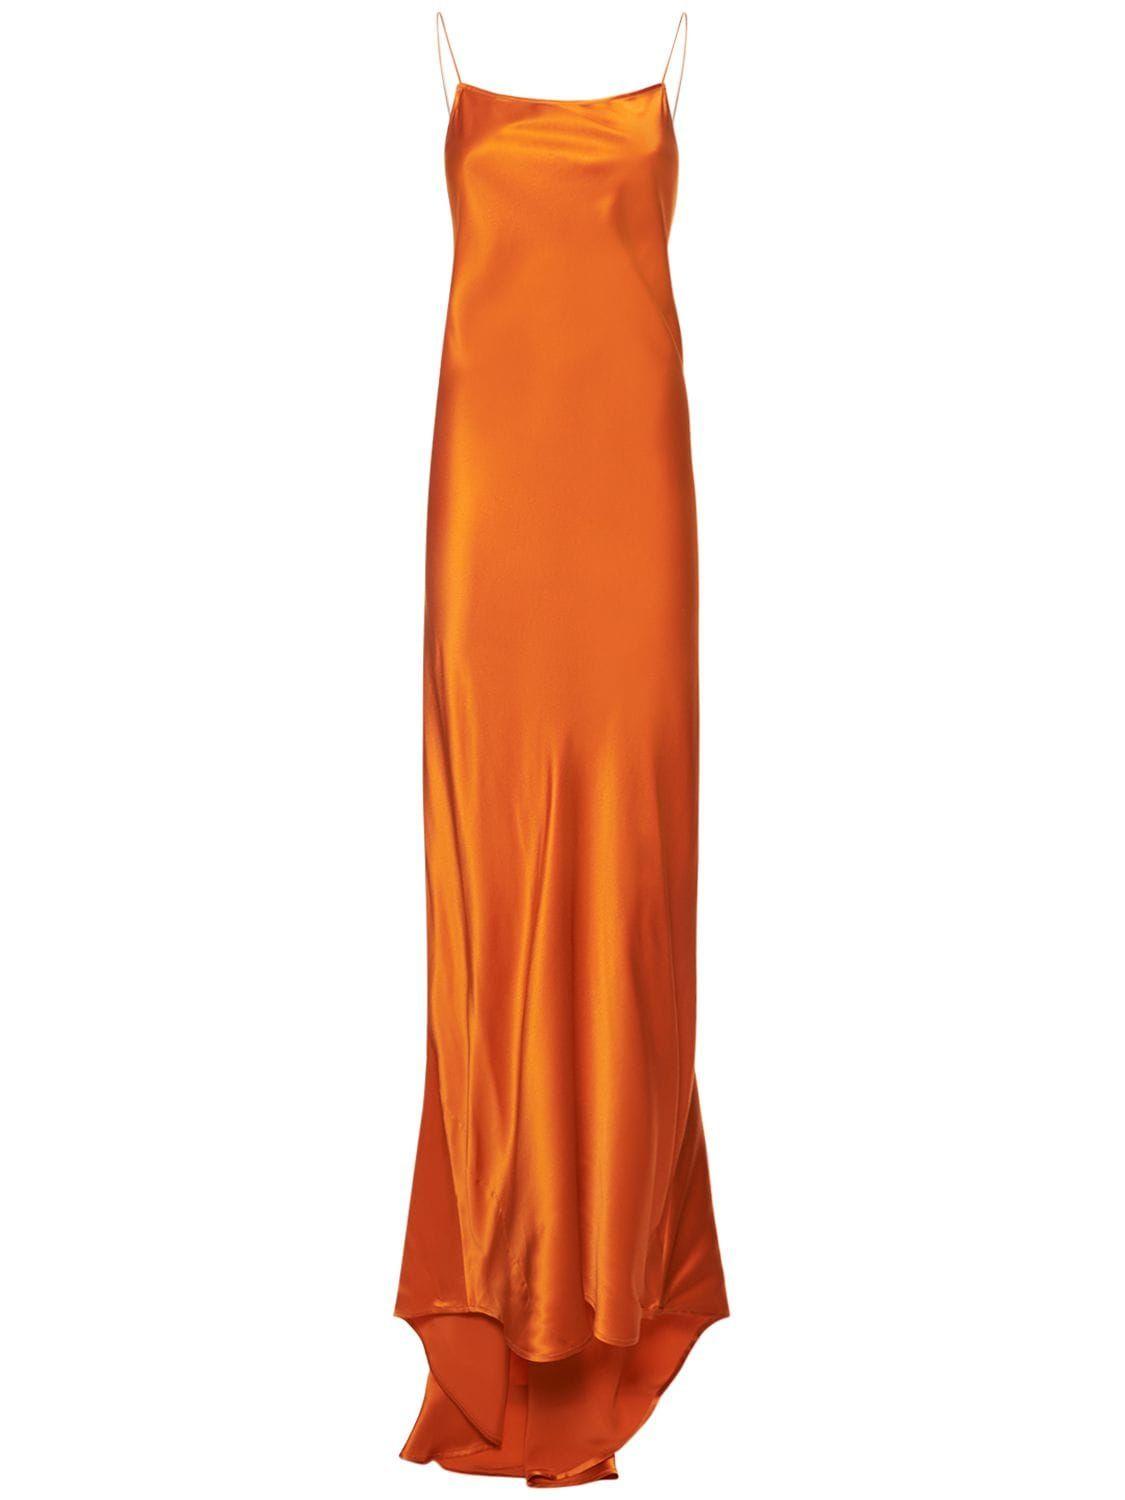 https://cdna.lystit.com/photos/lvr/2d06d161/nili-lotan-Orange-Elizabeth-Silk-Satin-Long-Dress.jpeg